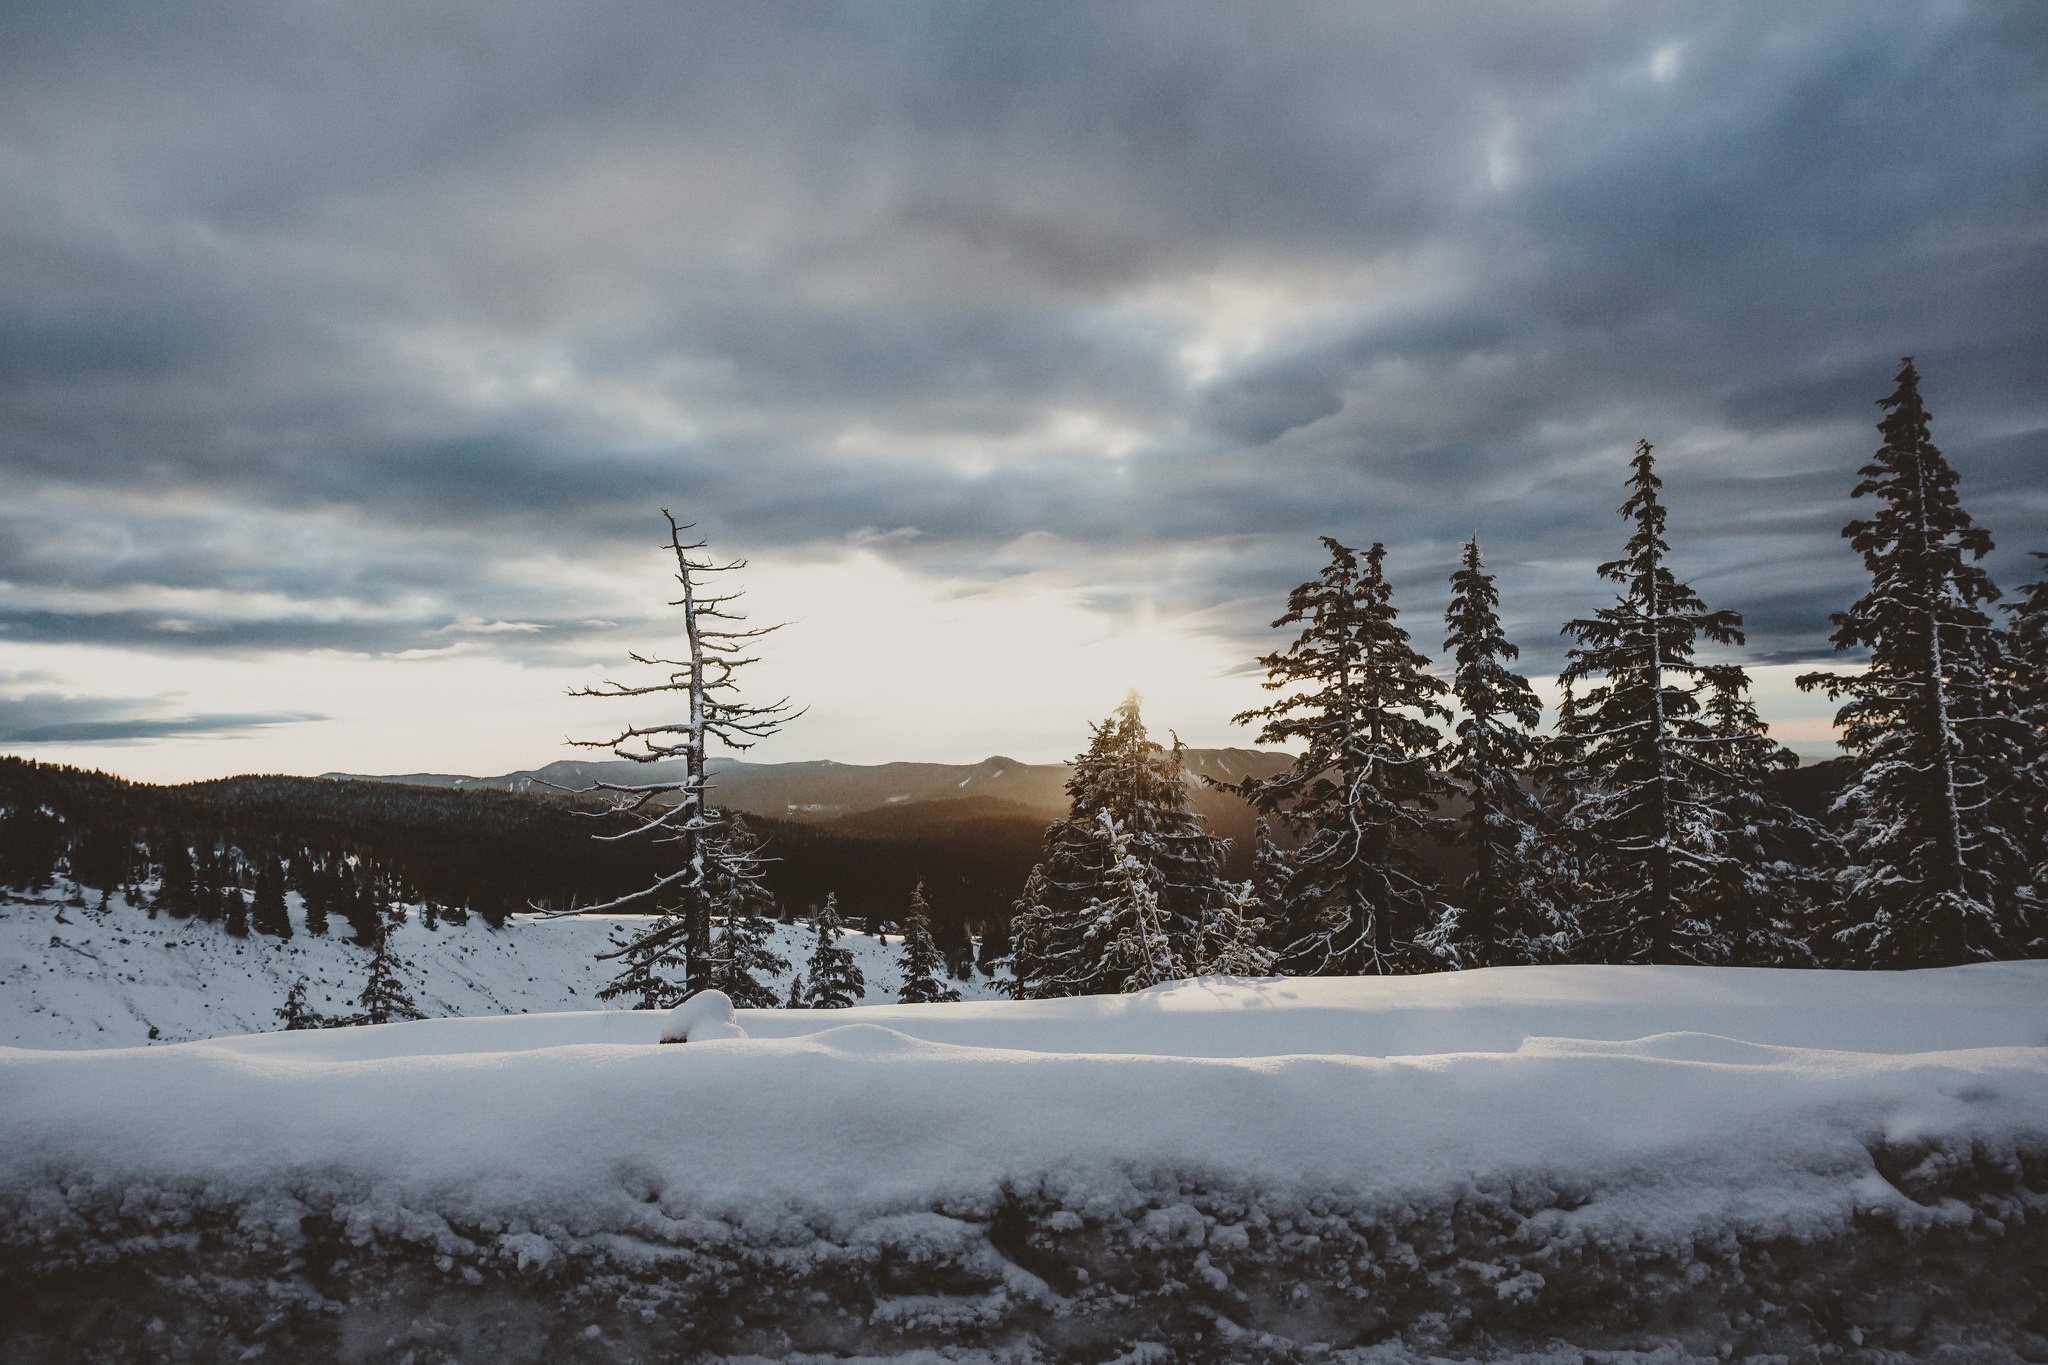 Скачать обои бесплатно Зима, Природа, Облака, Снег, Дерево, Ландшафт, Земля/природа картинка на рабочий стол ПК